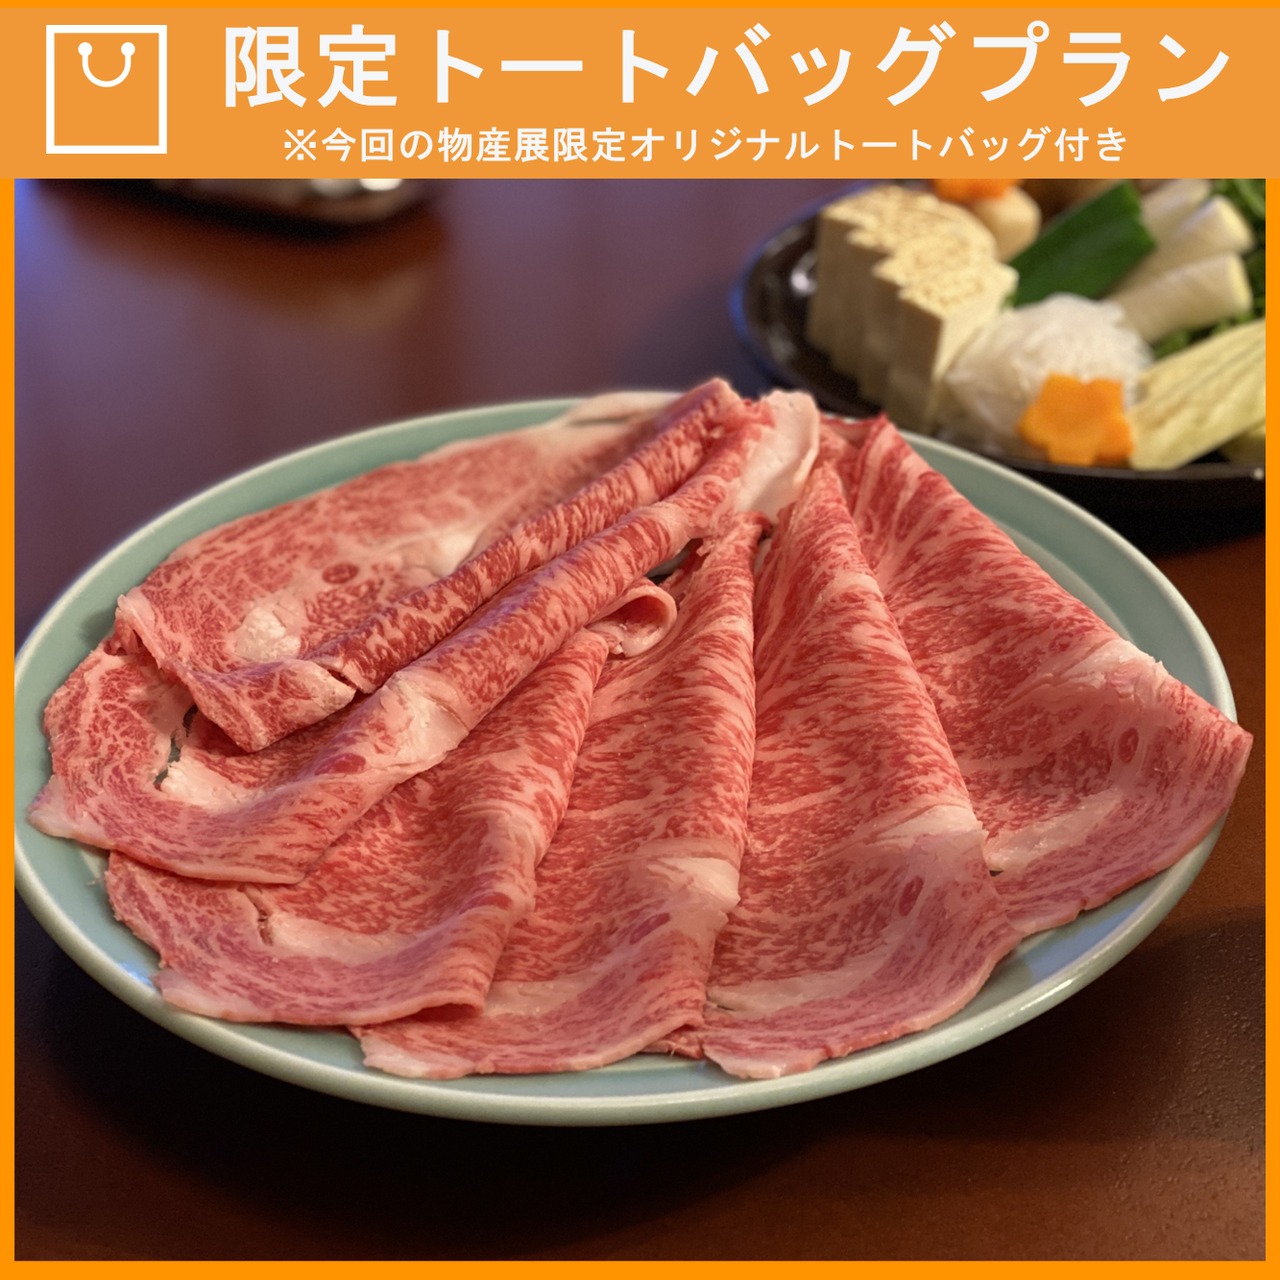 【特典つき】特選北海道産牛すき焼き用